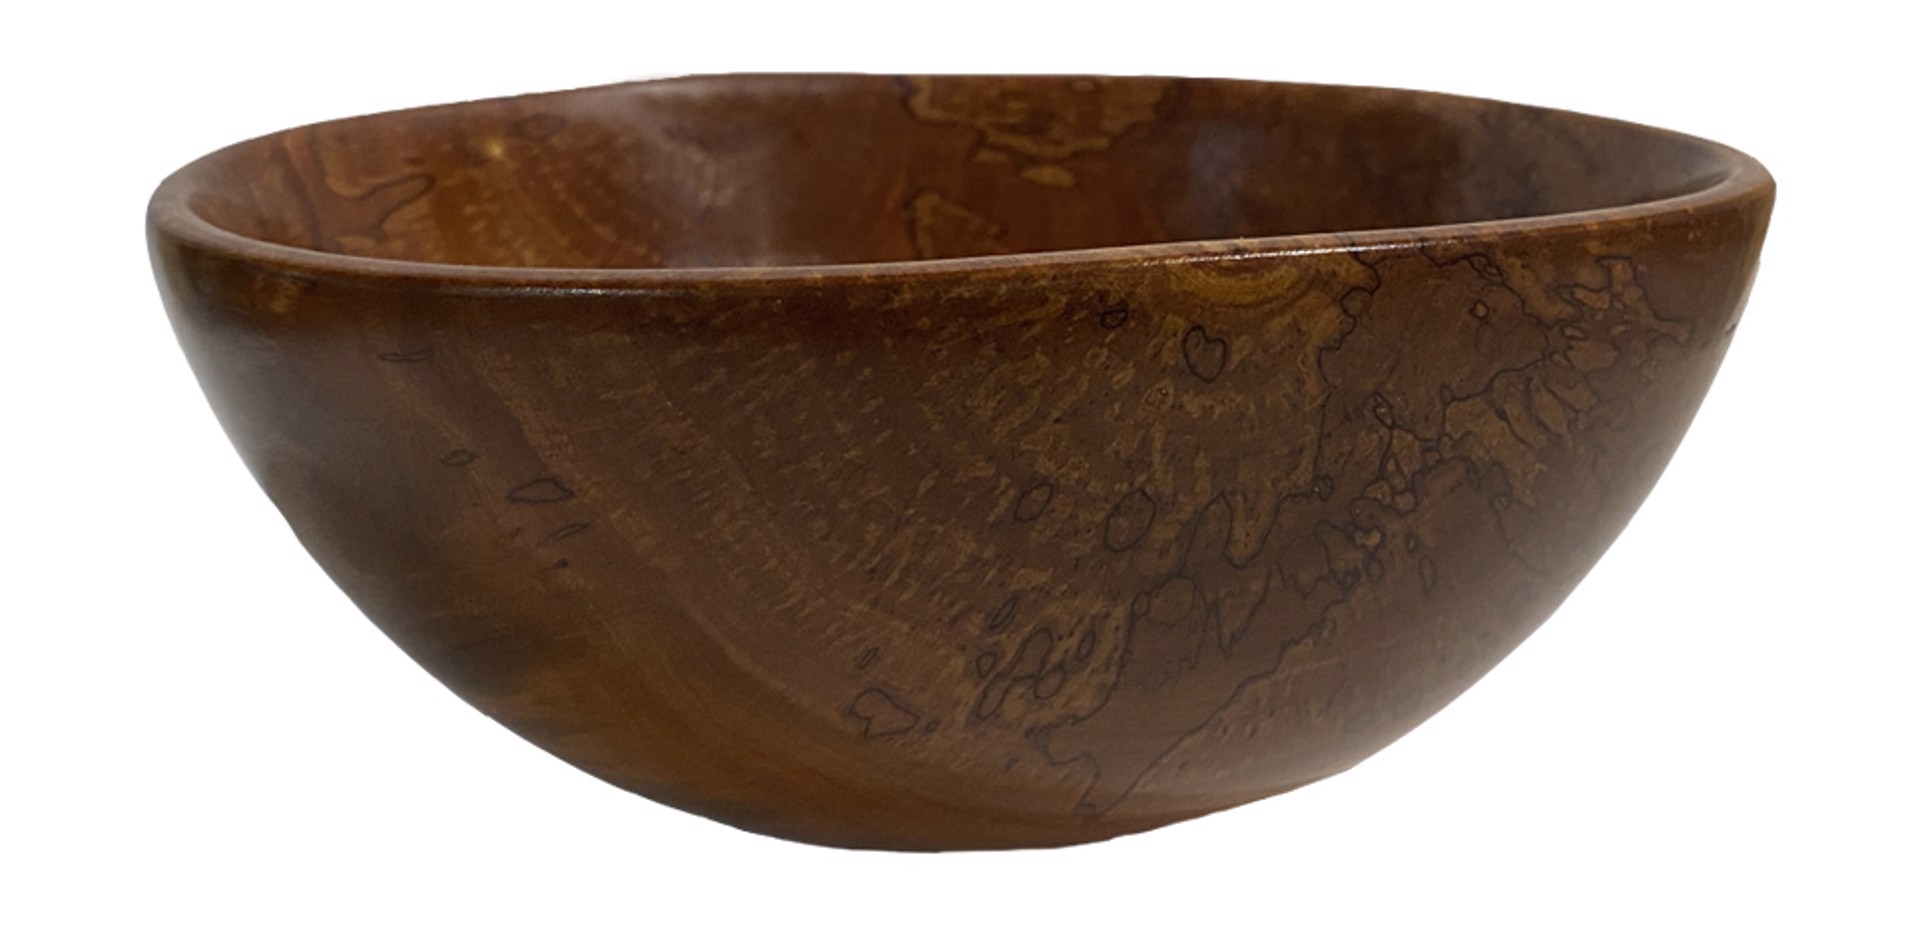 Rambutan Wood Bowl by Craig Mason